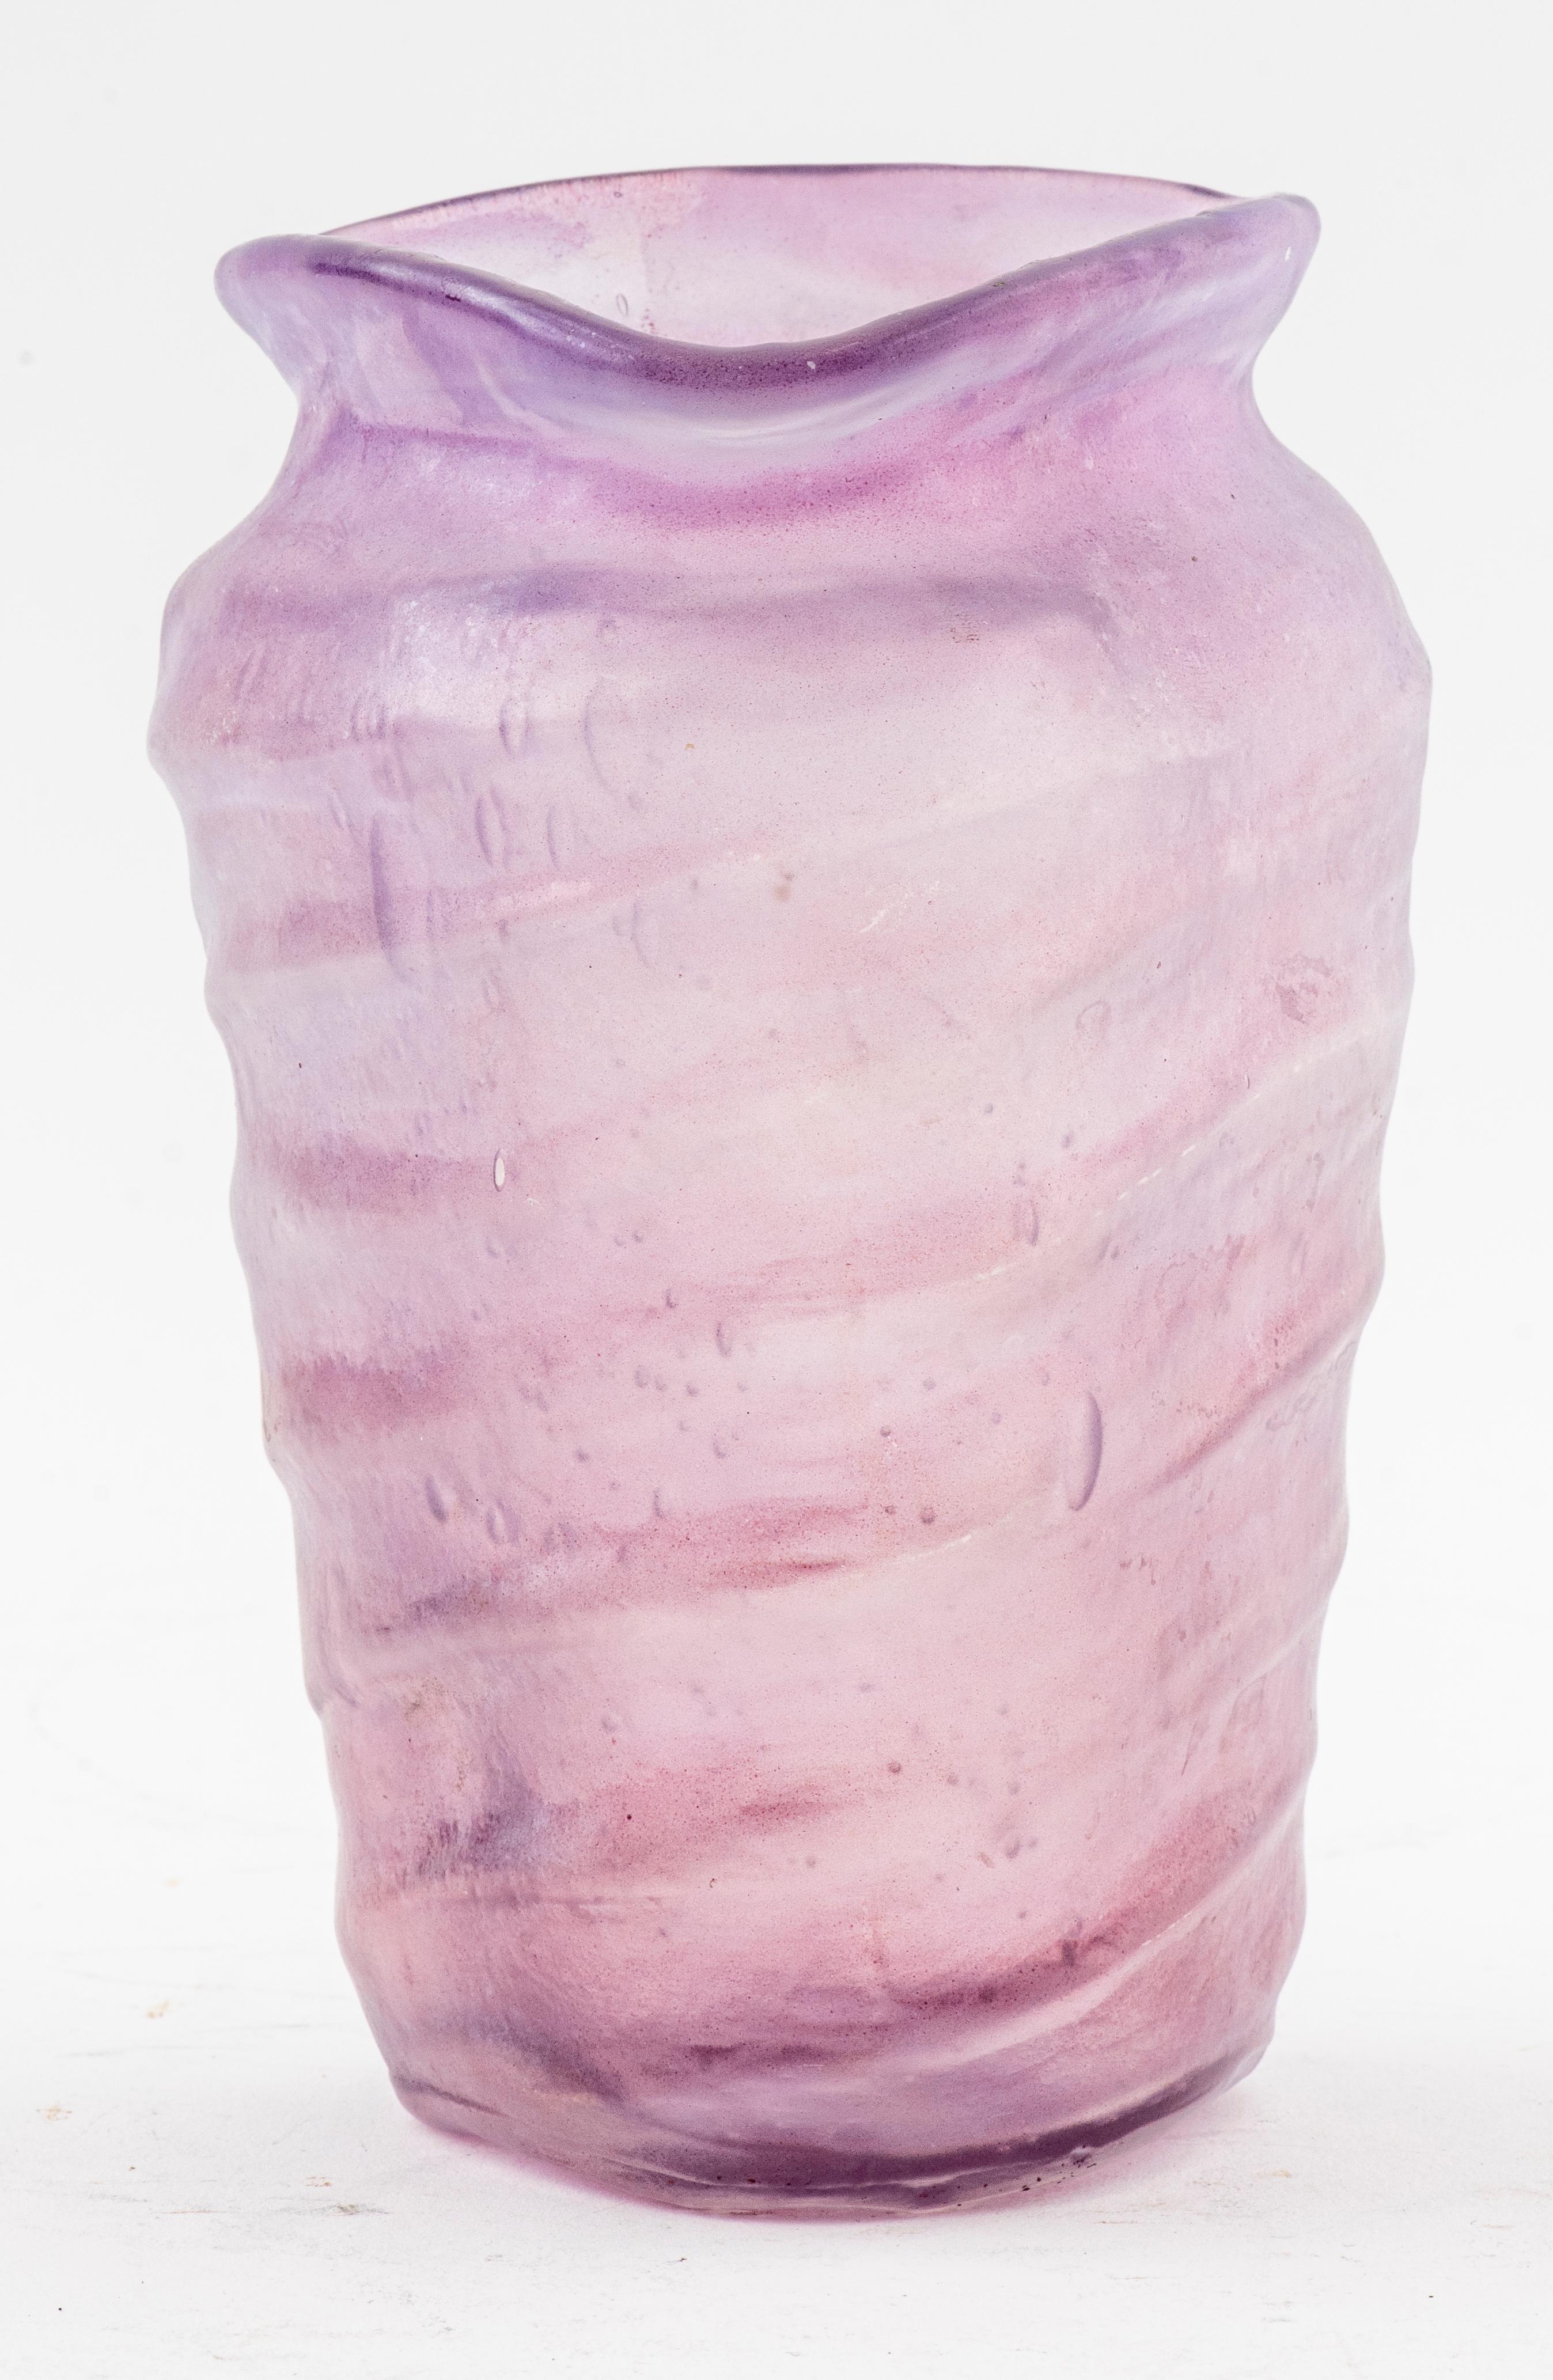 Vase contemporain en verre d'art violet soufflé à la bouche. 
Dimensions : 6,25